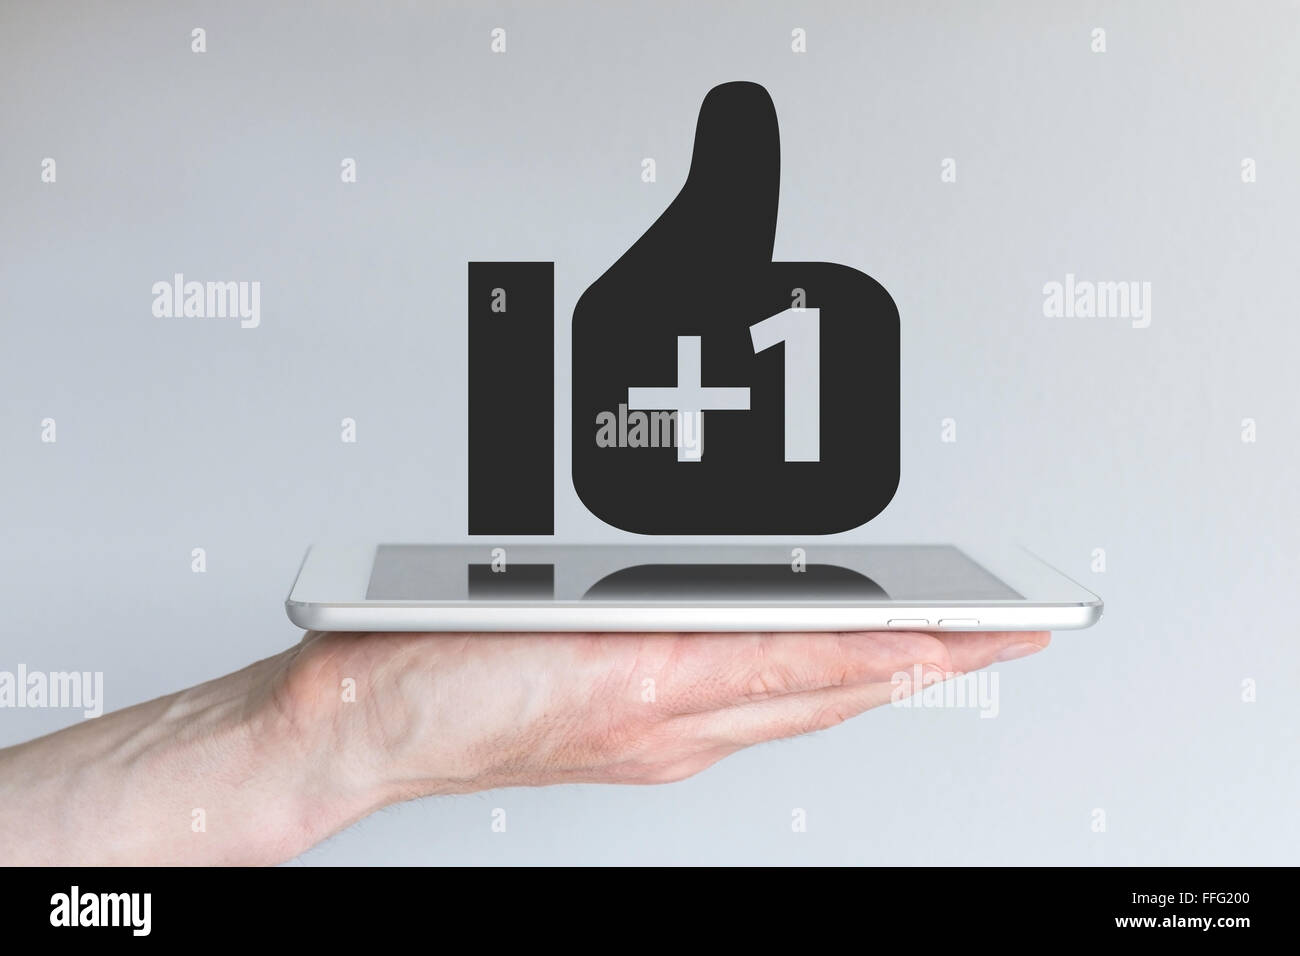 Réseau social Thumbs up icône avec signe plus. Concept de l'informatique mobile et les médias sociaux. Main tenant une tablette ou un téléphone intelligent. Banque D'Images